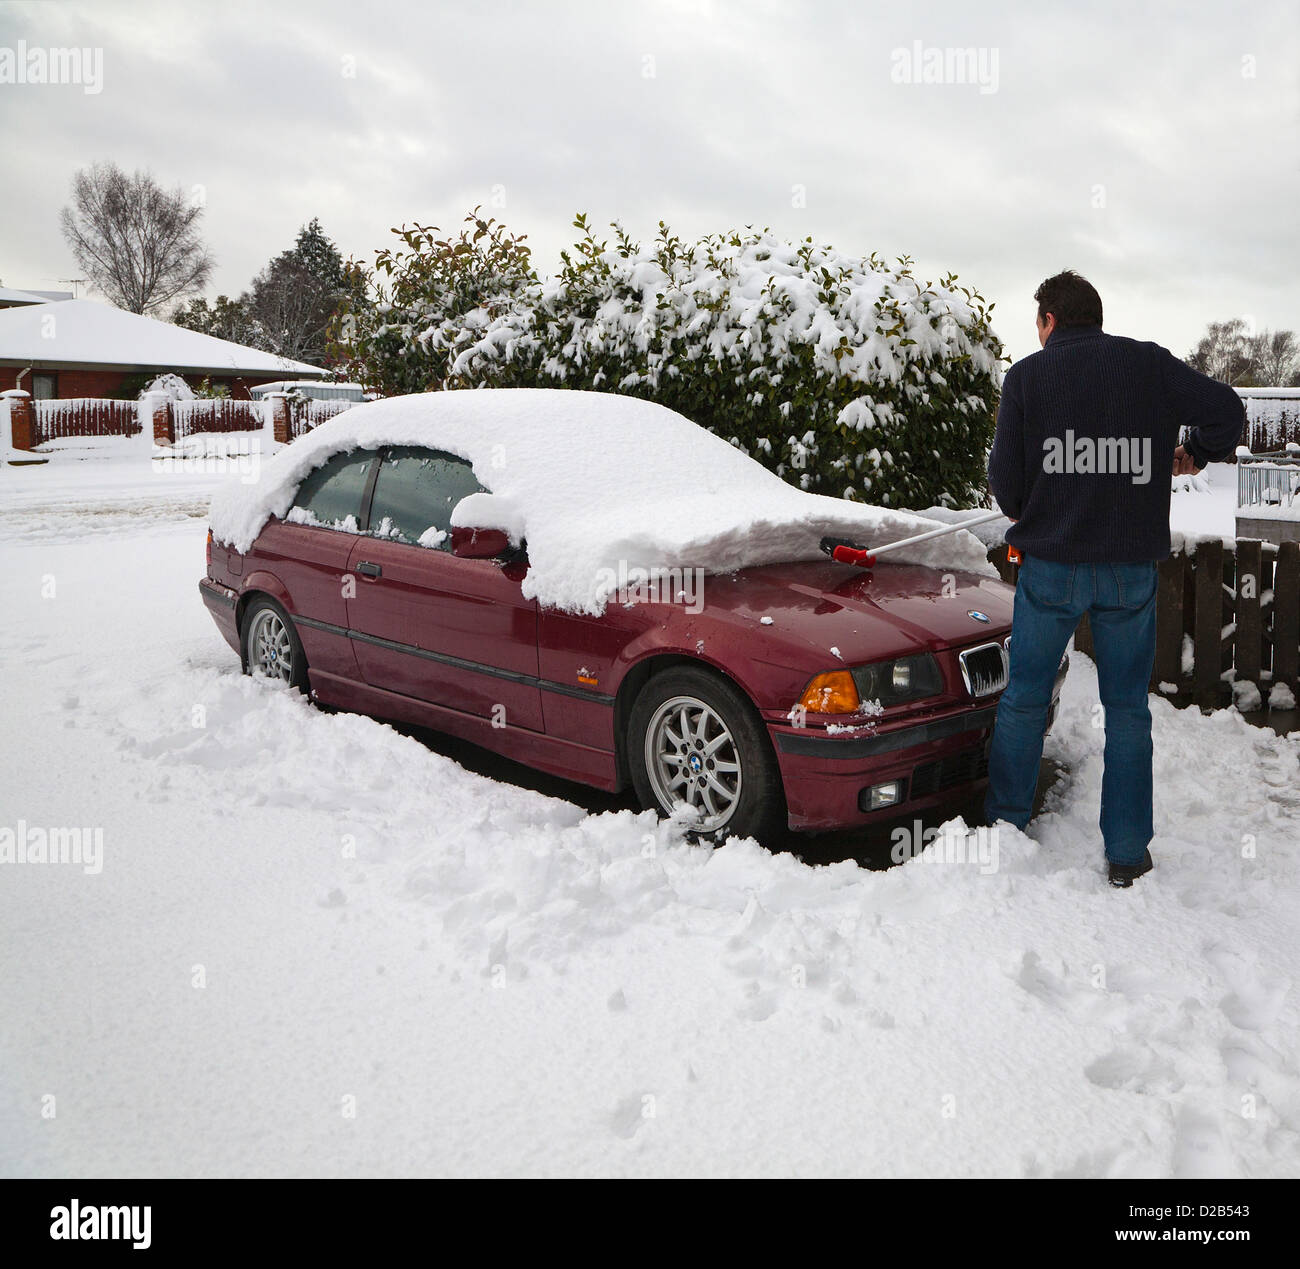 Frau Schaufelte Und Schneeräumung Von Ihrem Auto Im Schnee Stecken  Lizenzfreie Fotos, Bilder und Stock Fotografie. Image 34939128.